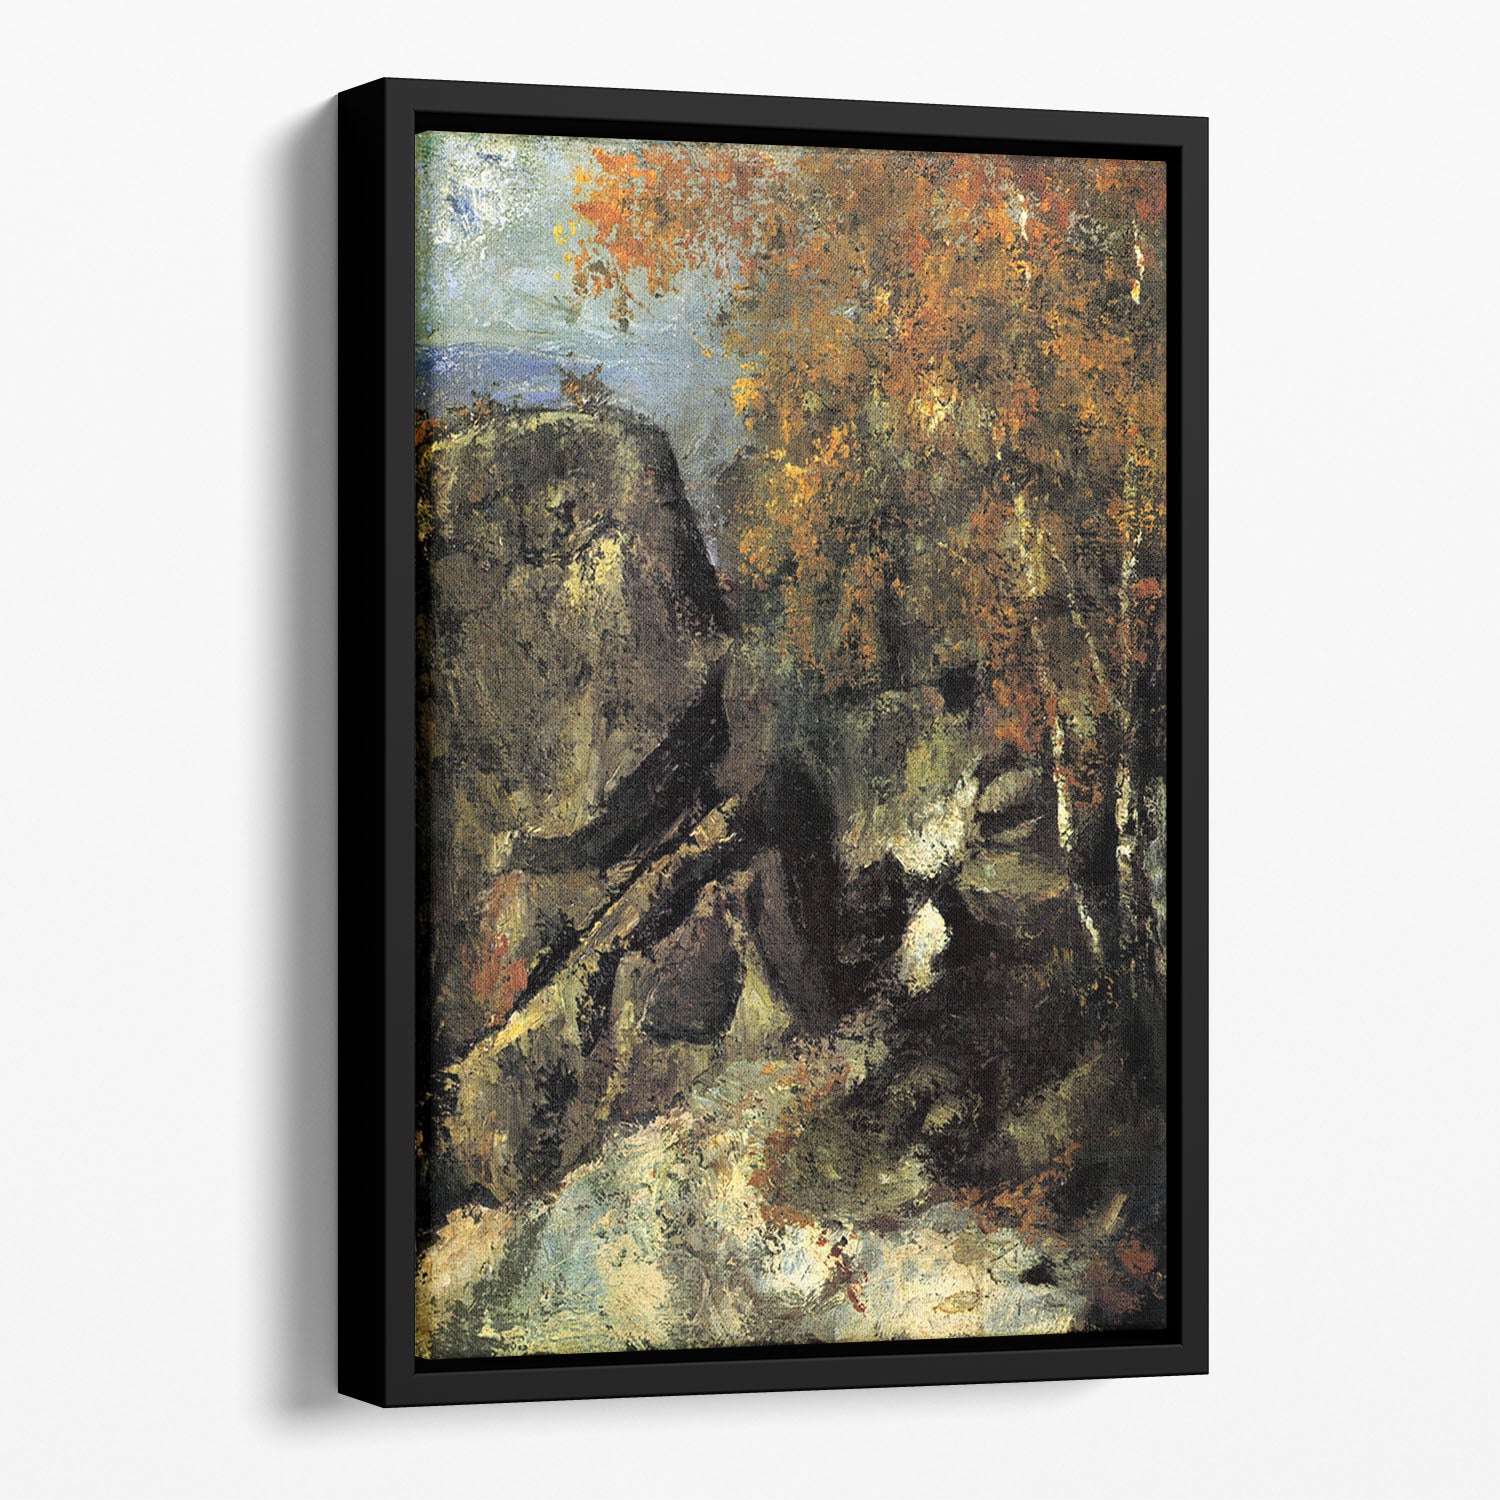 Rocks in Fountanbleu Forest by Cezanne Floating Framed Canvas - Canvas Art Rocks - 1